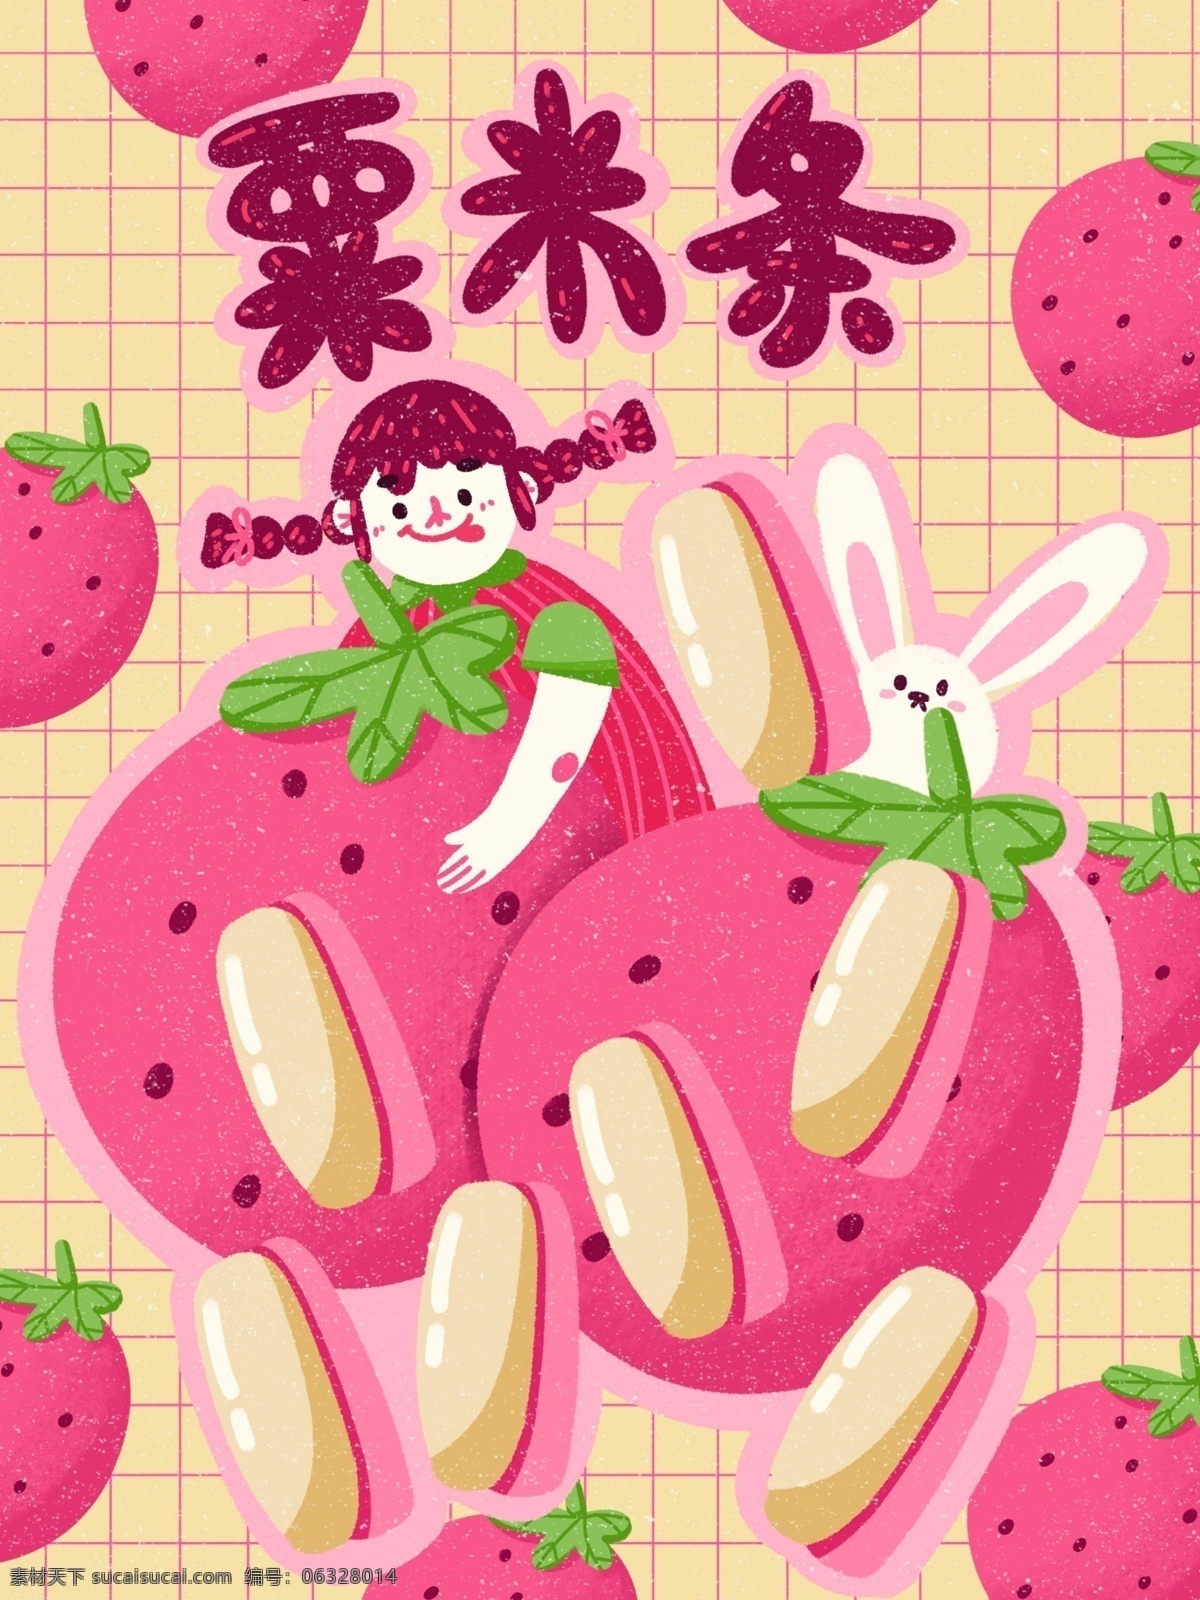 膨化食品 栗 米 条 草莓 水果 味 创意 薯条 插画 包装 栗米条 可爱 卡通 小清新 产品 草莓味 夏天 水果味 零食